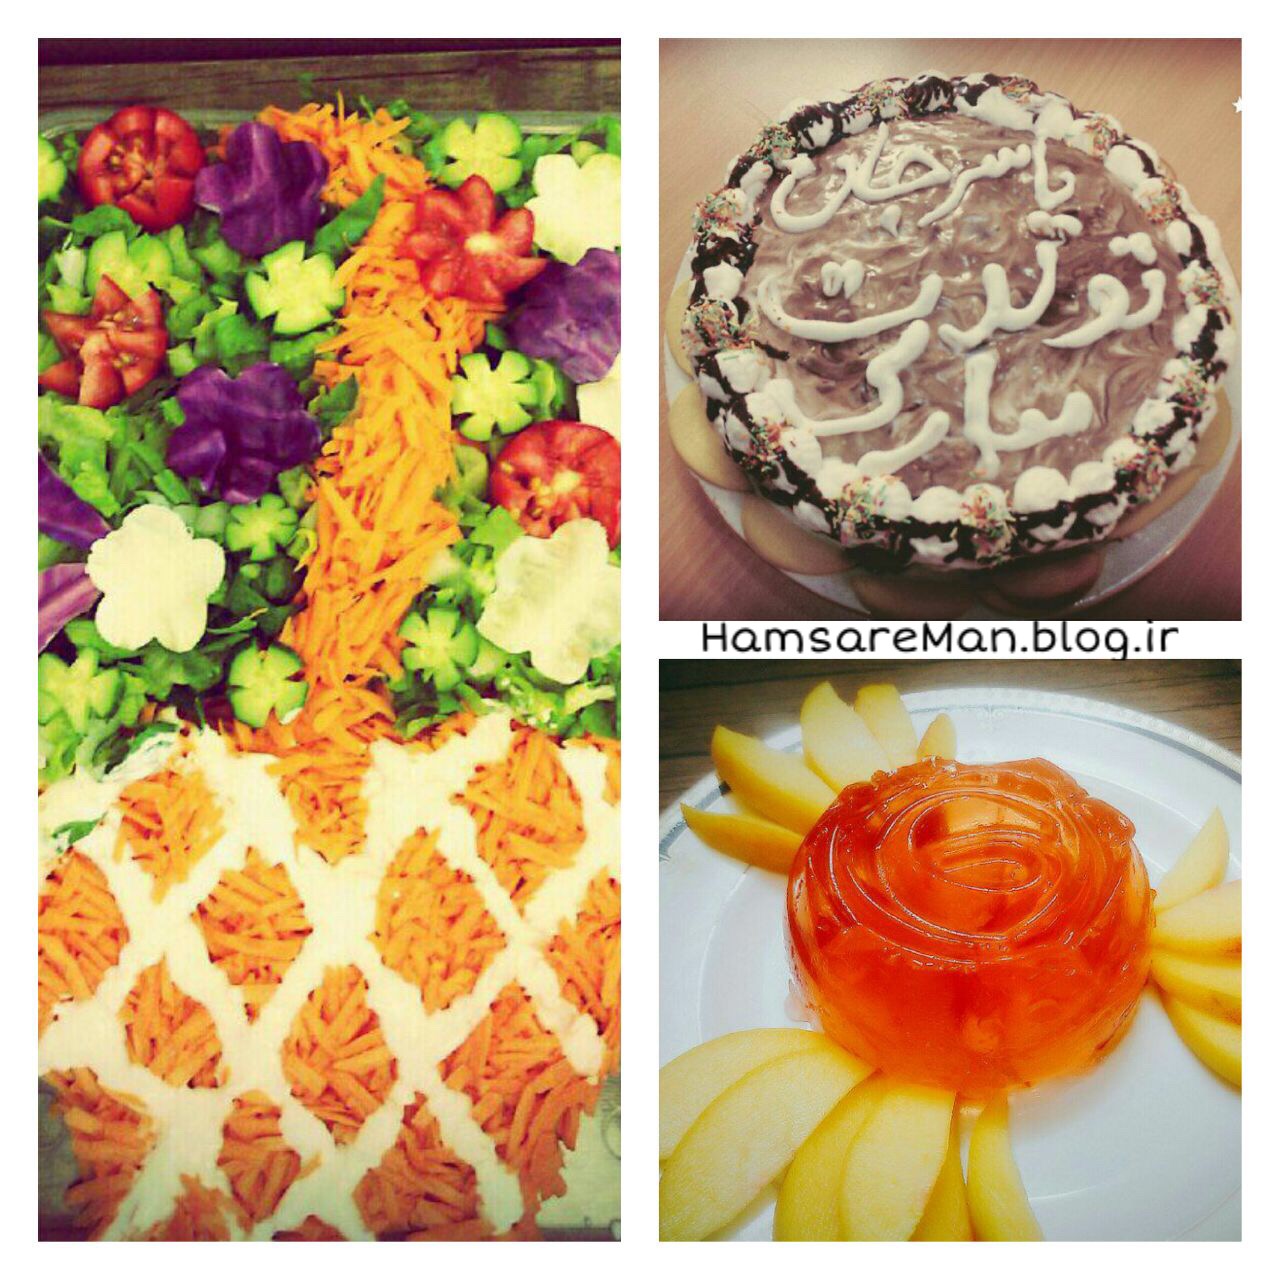 تزئین سالاد کاهو، کیک 🎂 و دسر هلو 🍑 برای تولد همسر